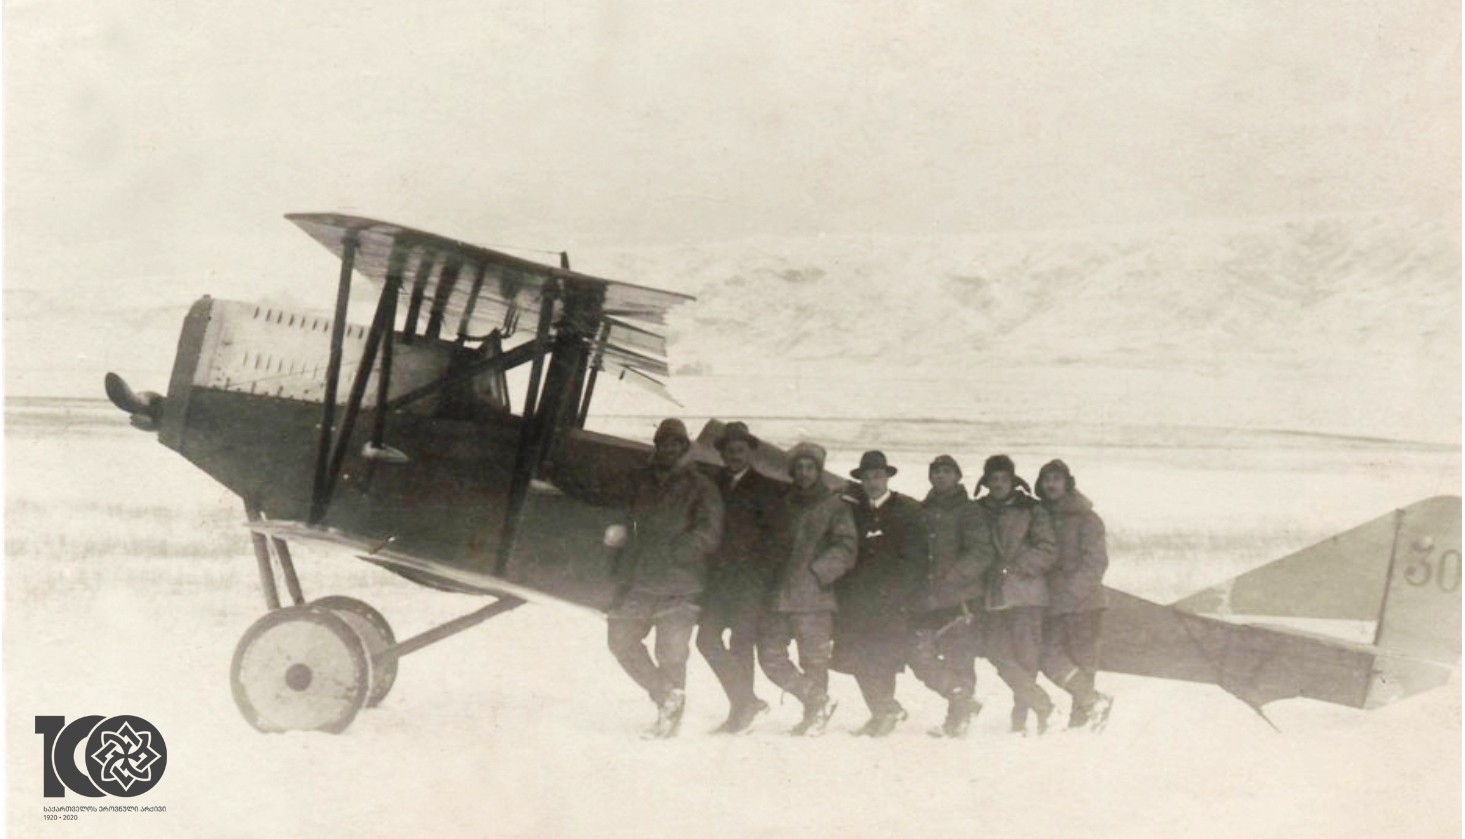 ქართველი და იტალიელი მფრინავები იტალიურ „ანსალდოს“ ფირმის SVA-10 აეროპლანის ფონზე. 
1920 წელი.
<br>
 Georgian and Italian pilots on the background of the Italian “Ansaldo” company SVA-10 airplane. 1920